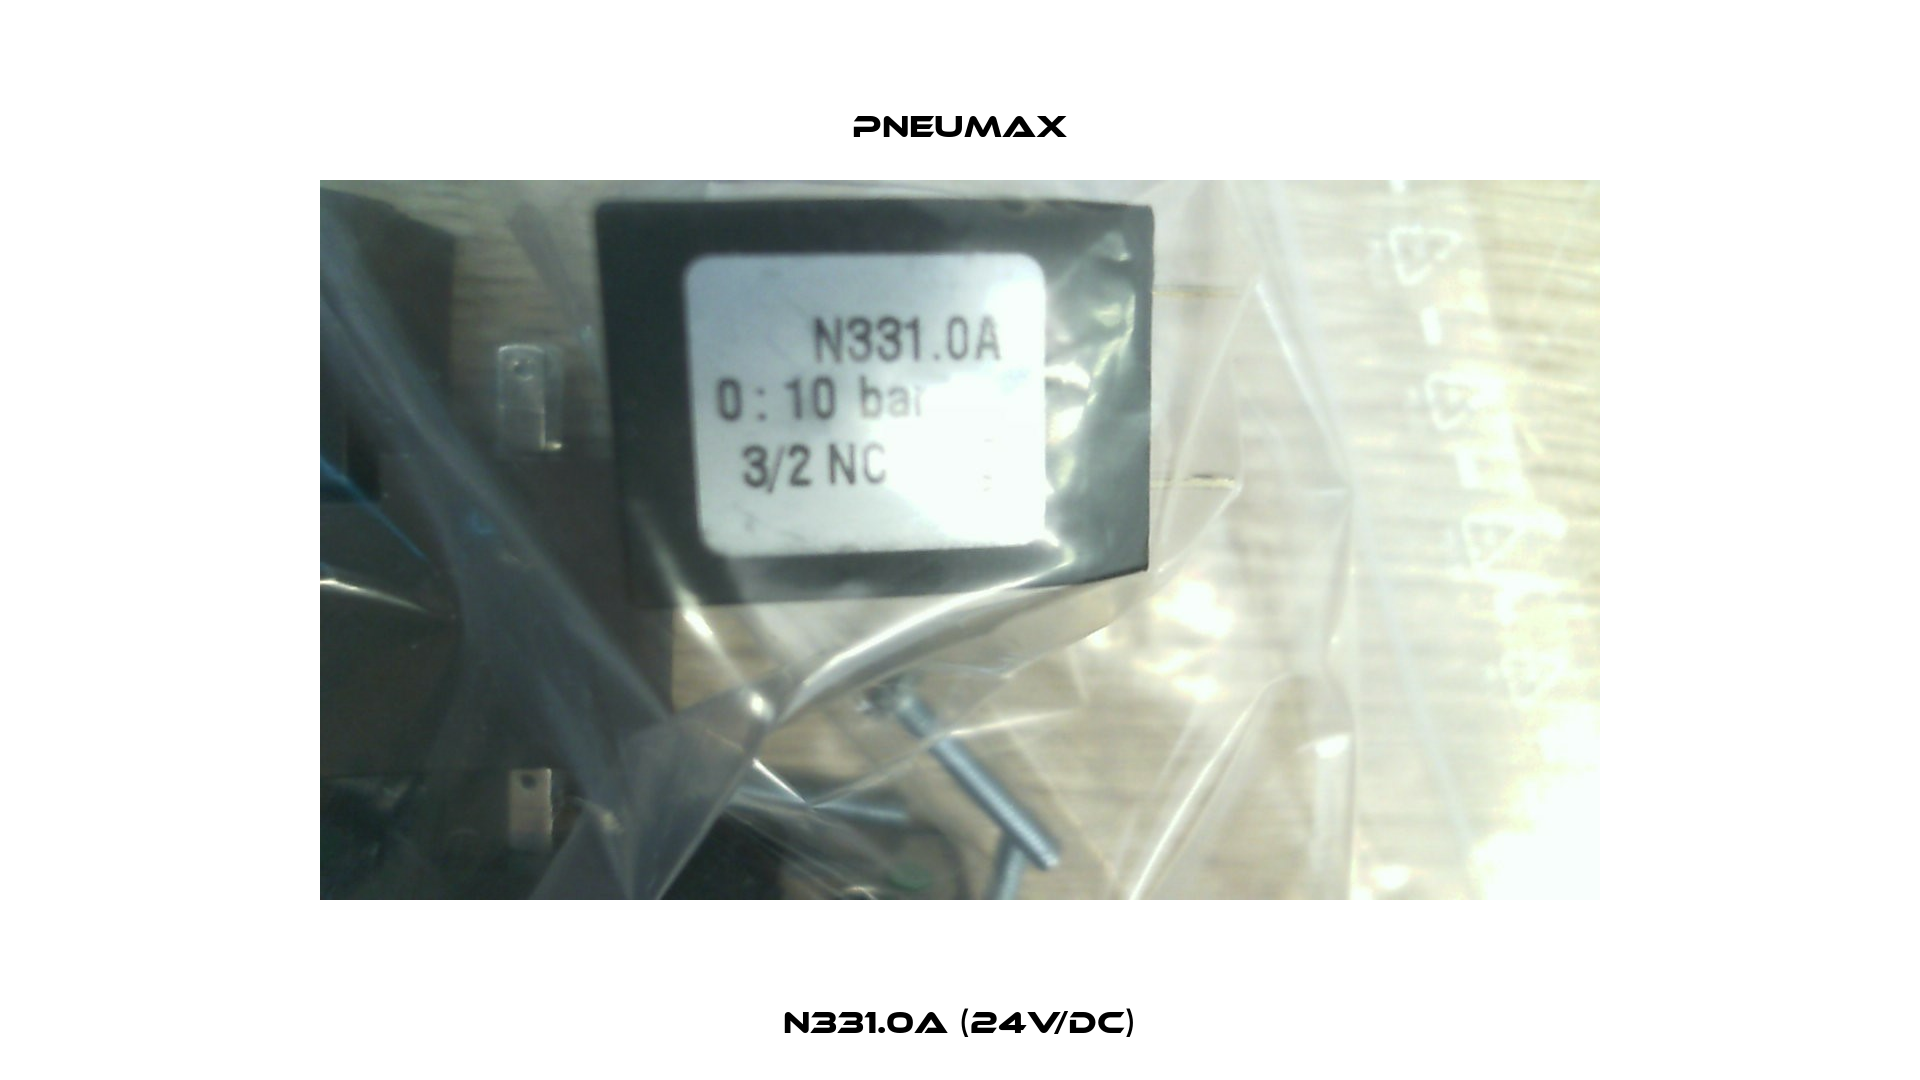 N331.0A (24V/DC) Pneumax